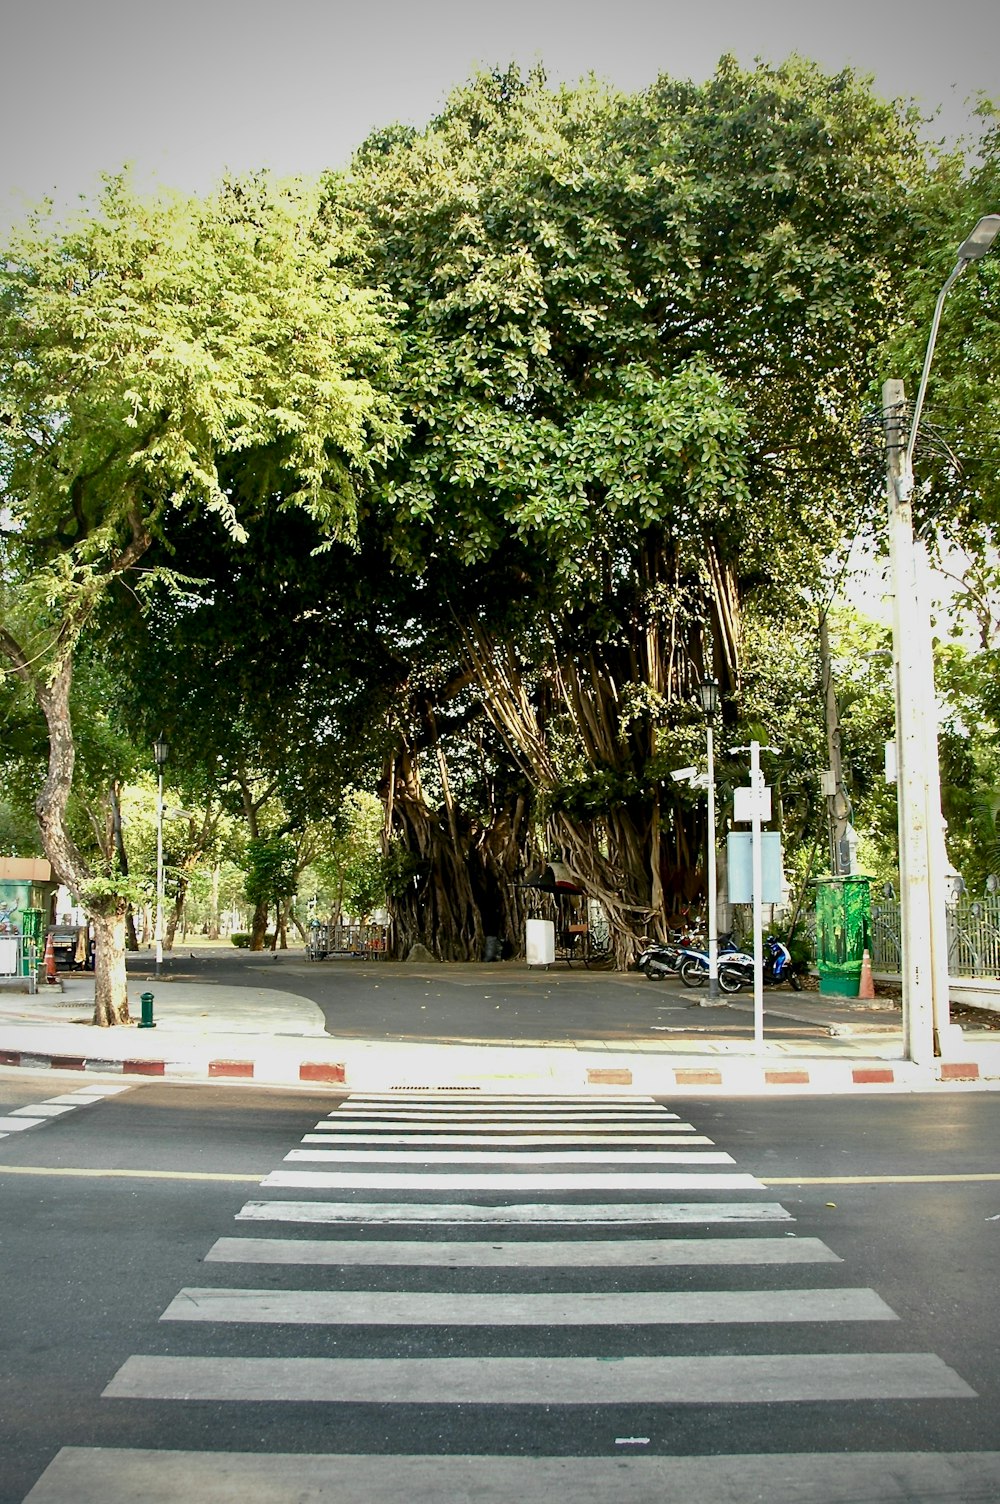 green trees beside pedestrian lane during daytime